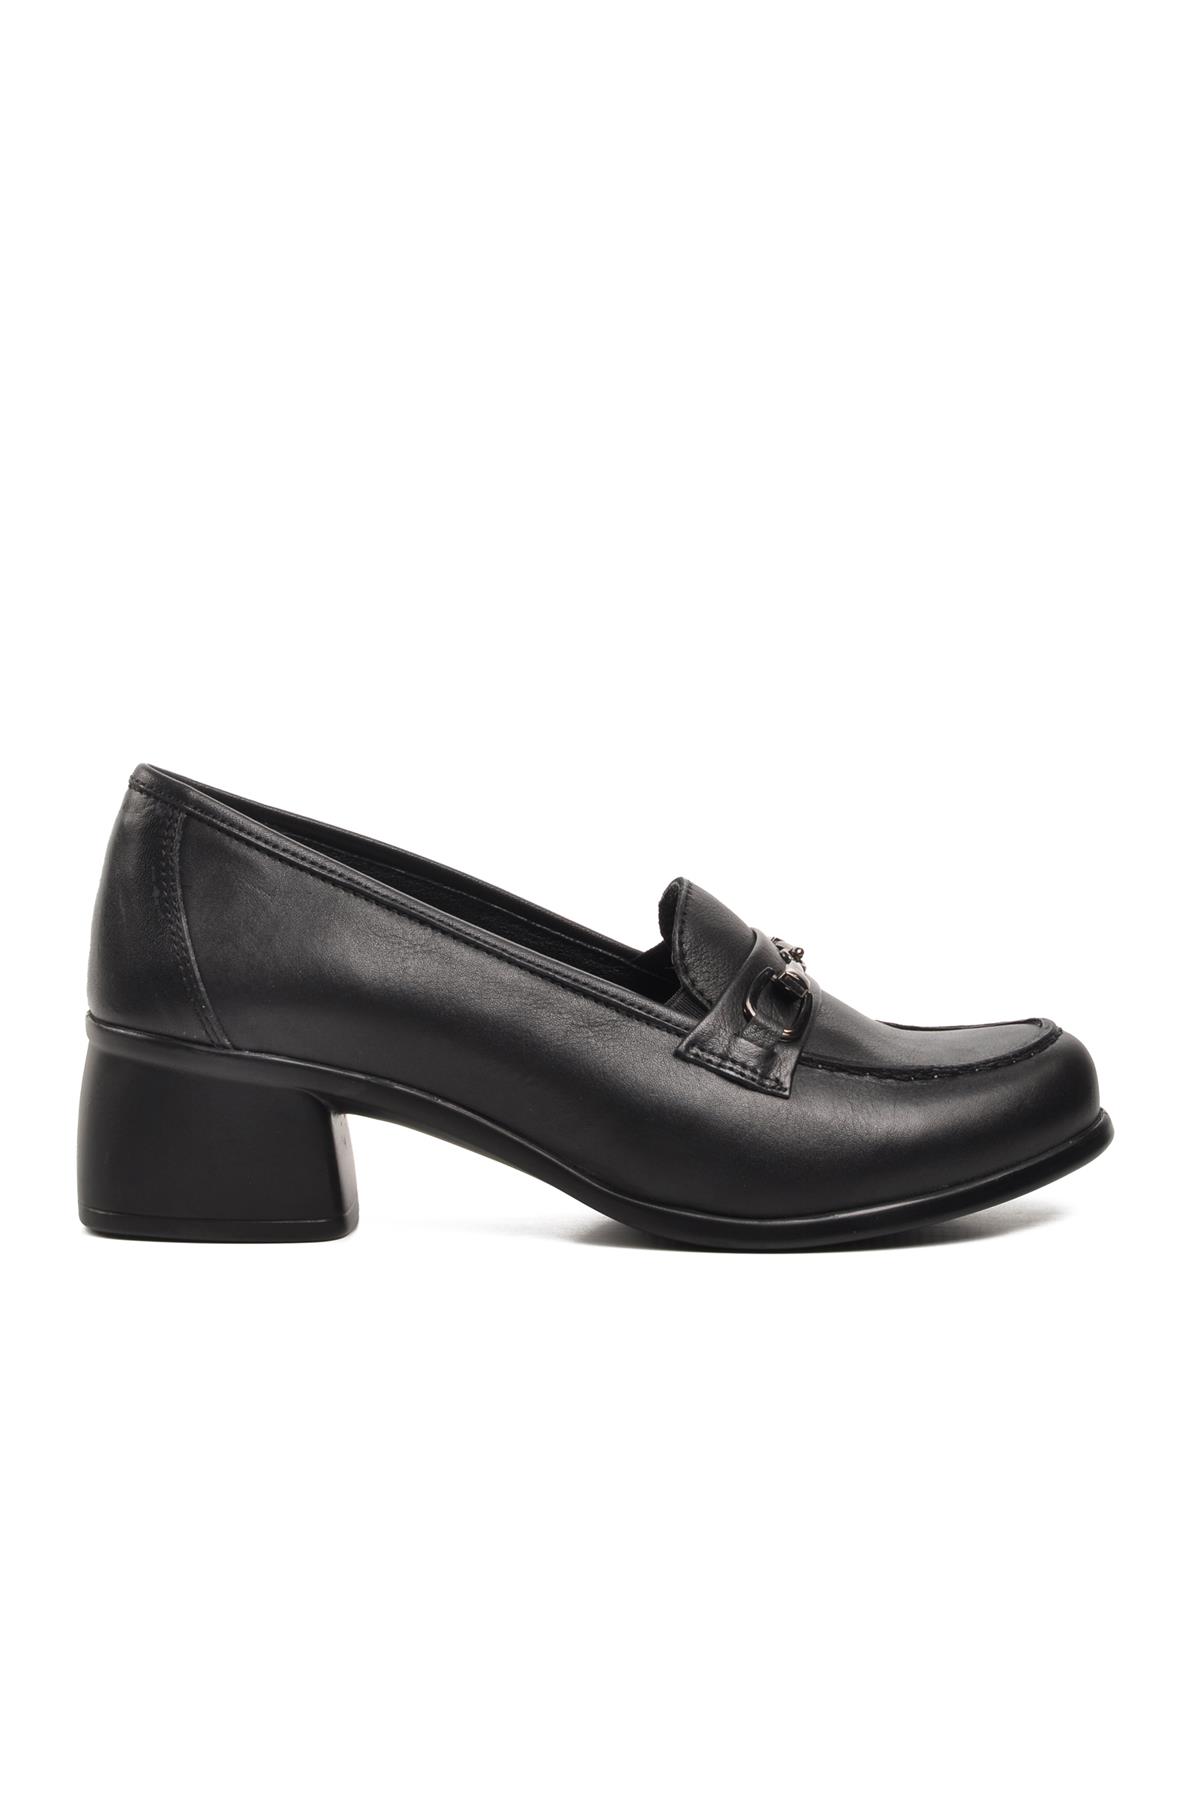 Ayakmod 44259 Siyah Hakiki Deri Kadın Günlük Ayakkabı Ayakmod Kadın Günlük Ayakkabı